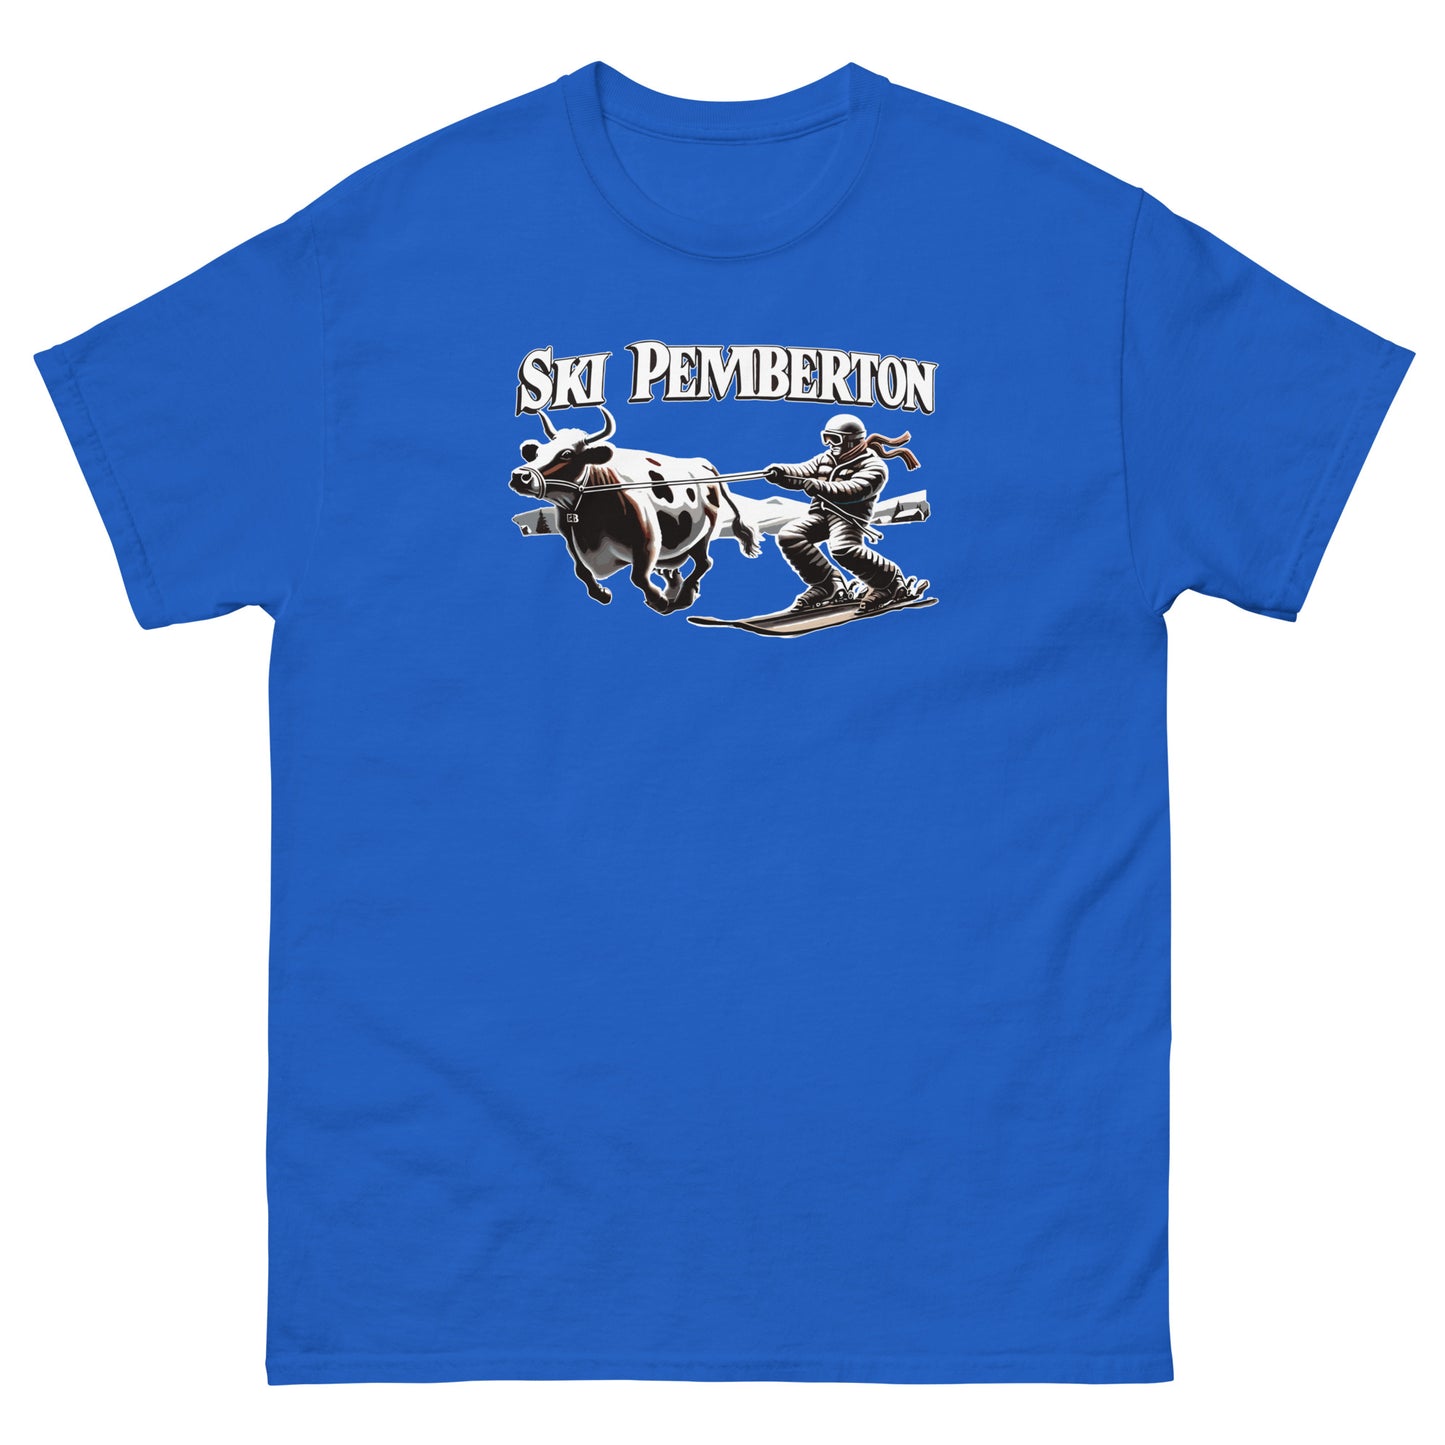 Ski Pemberton T-shirt printed by Whistler Shirts